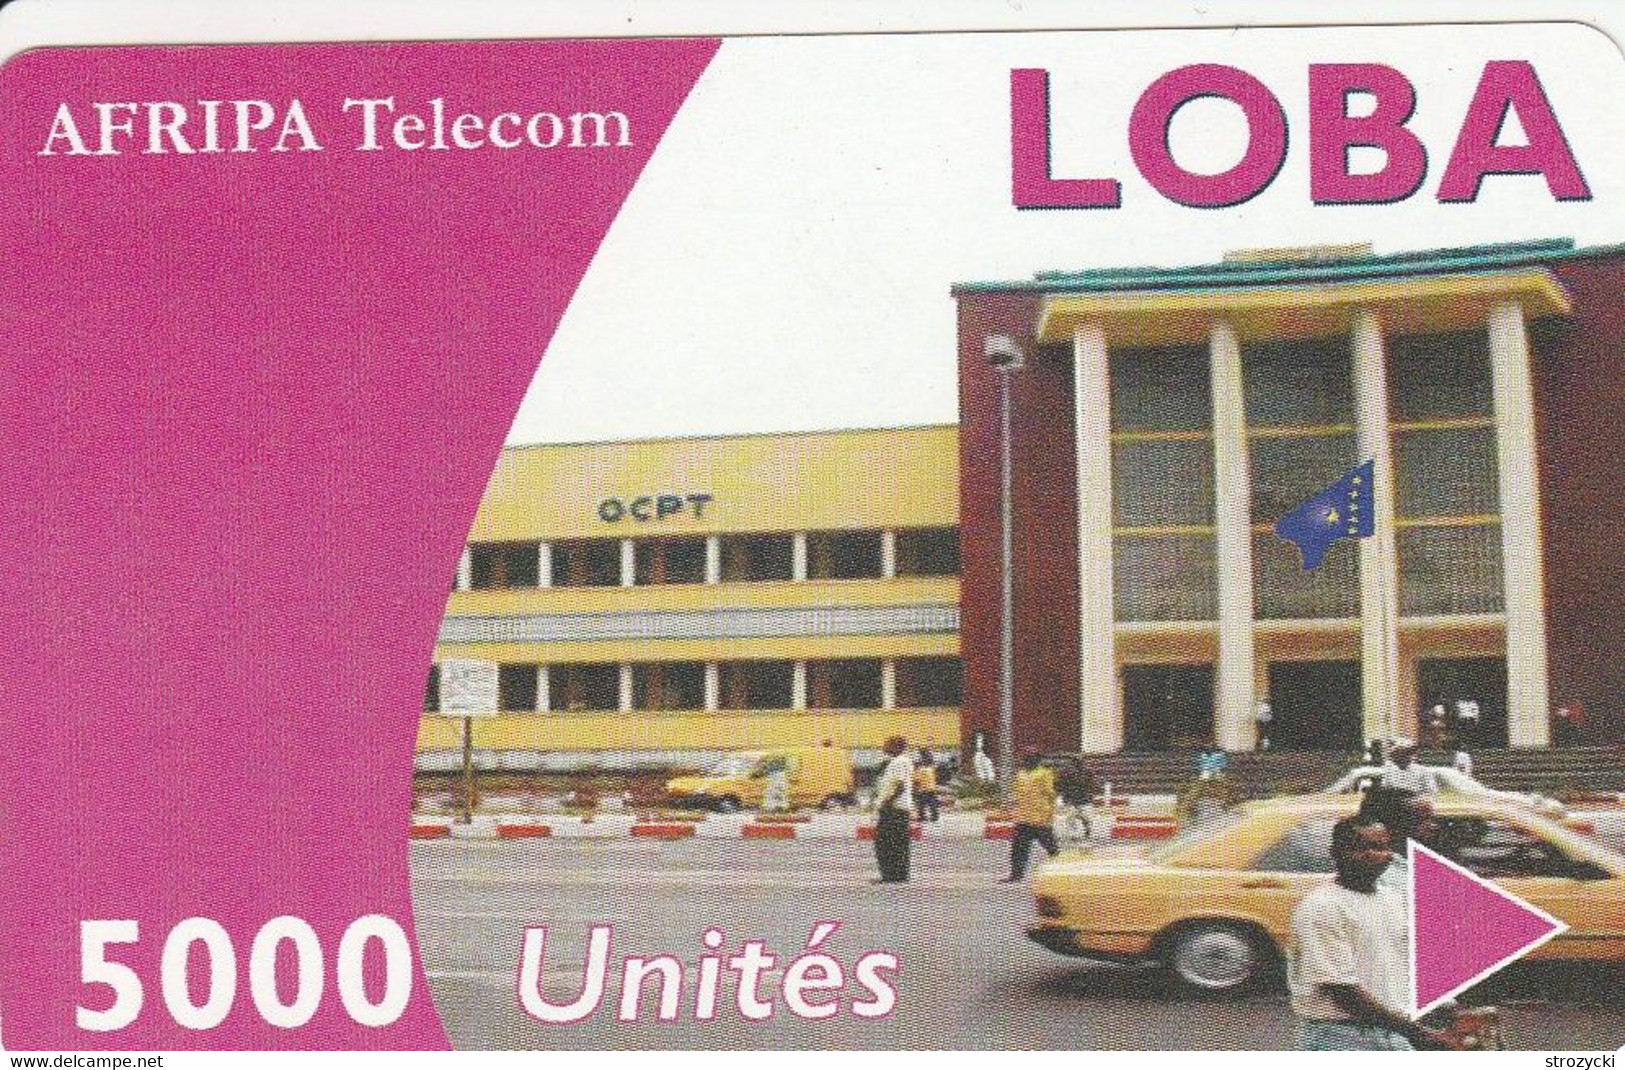 Congo (Kinshasa) - Afripa Telecom - OCPT Building 5000un. - Congo